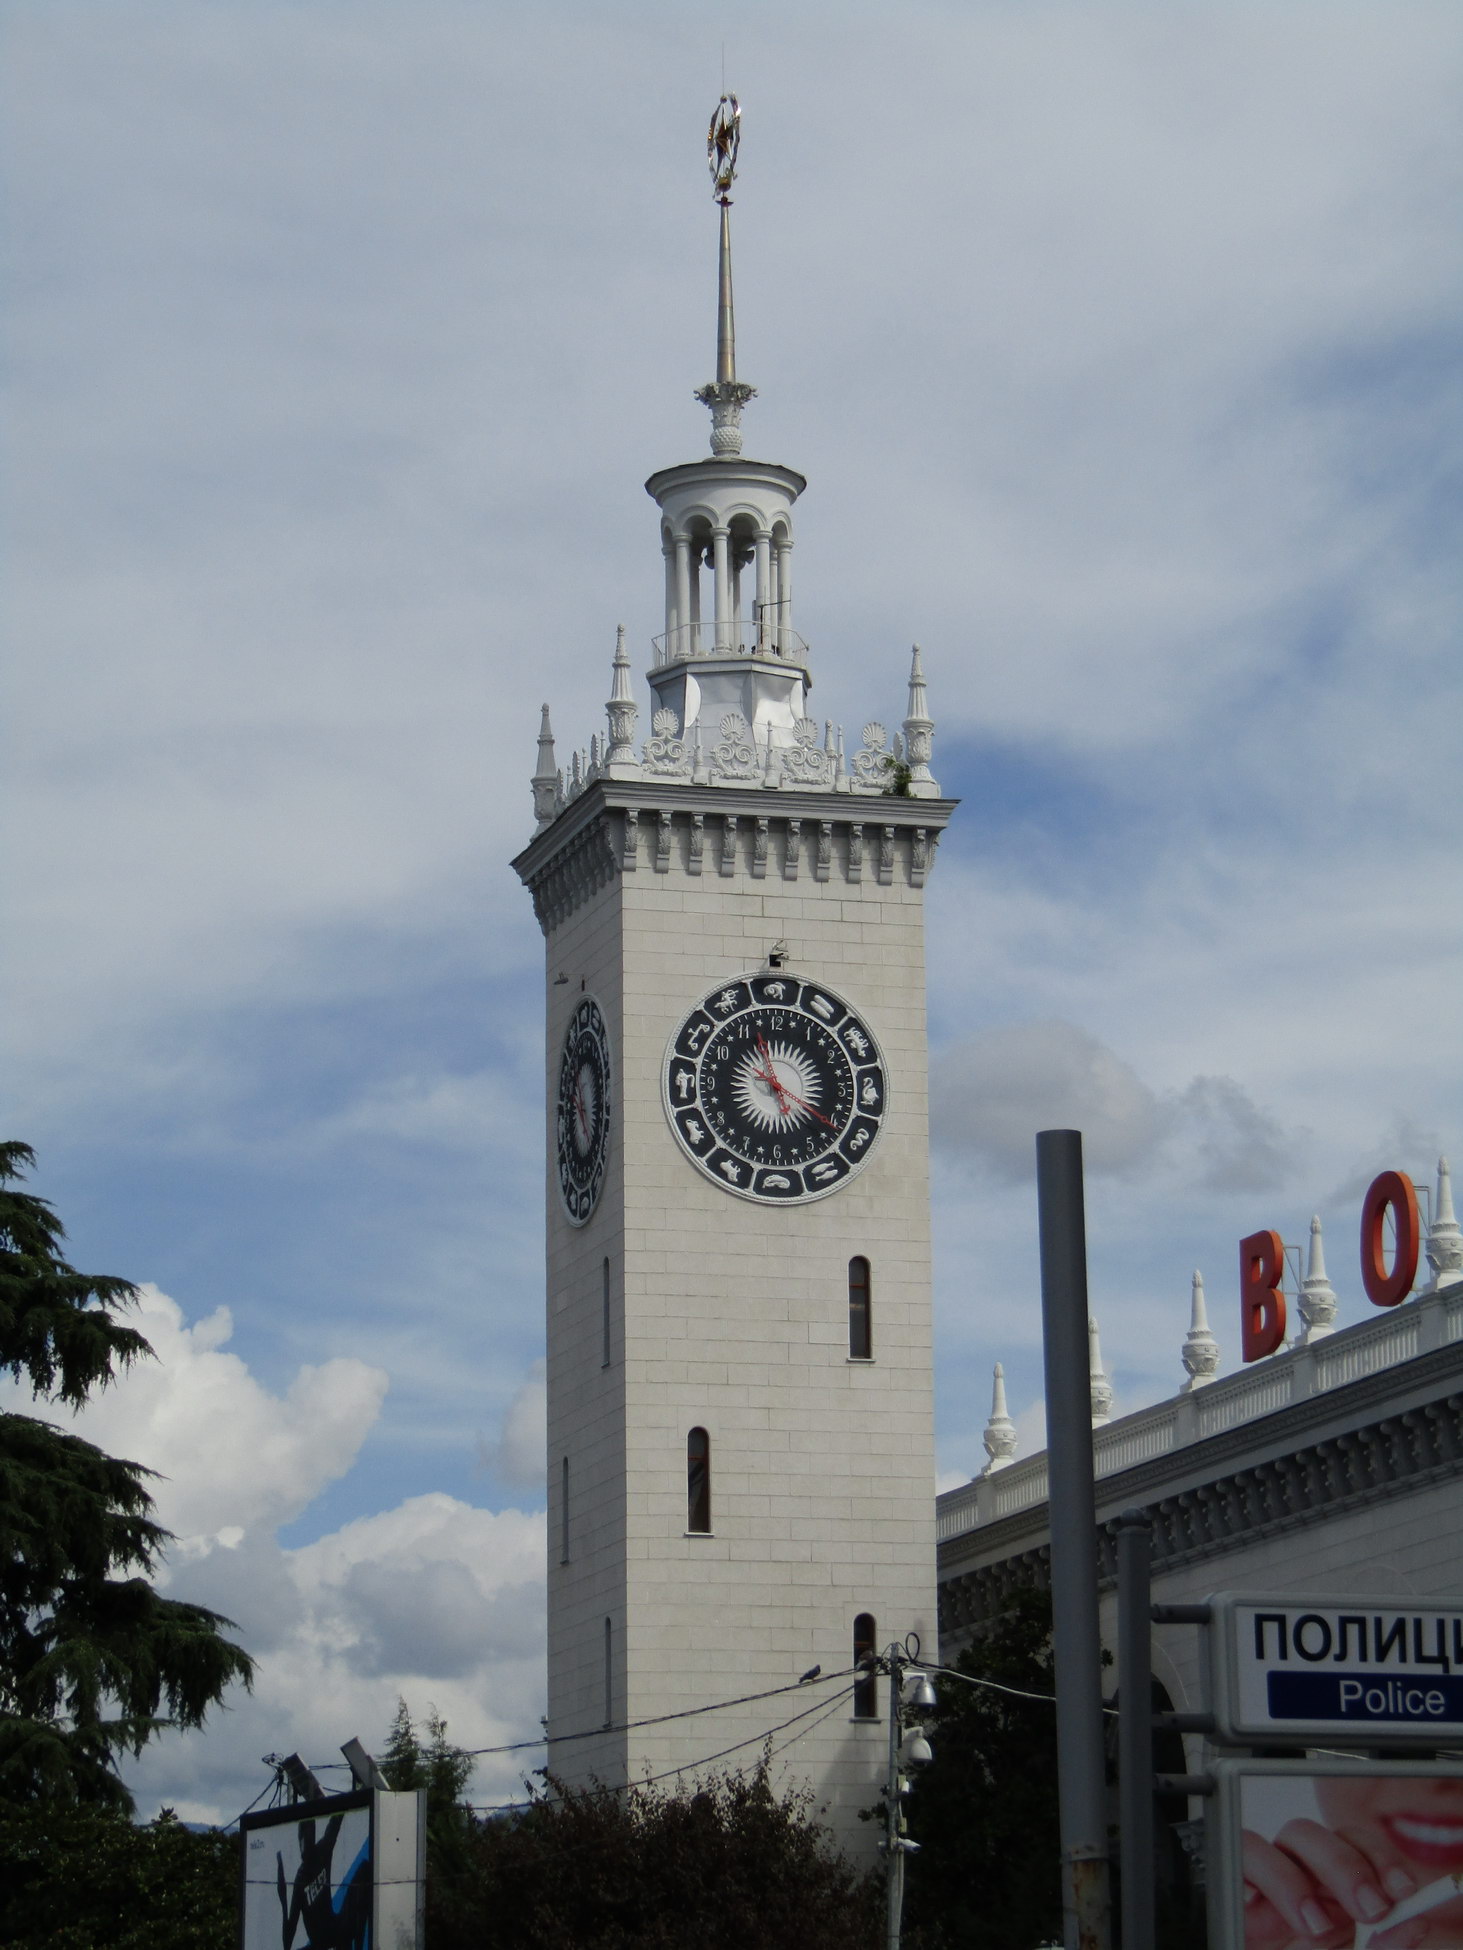 Прием часов сочи. ЖД вокзал Сочи башня. ЖД вокзал Сочи циферблат. Башня вокзала часы Сочи. ЖД вокзал Сочи башня с часами.